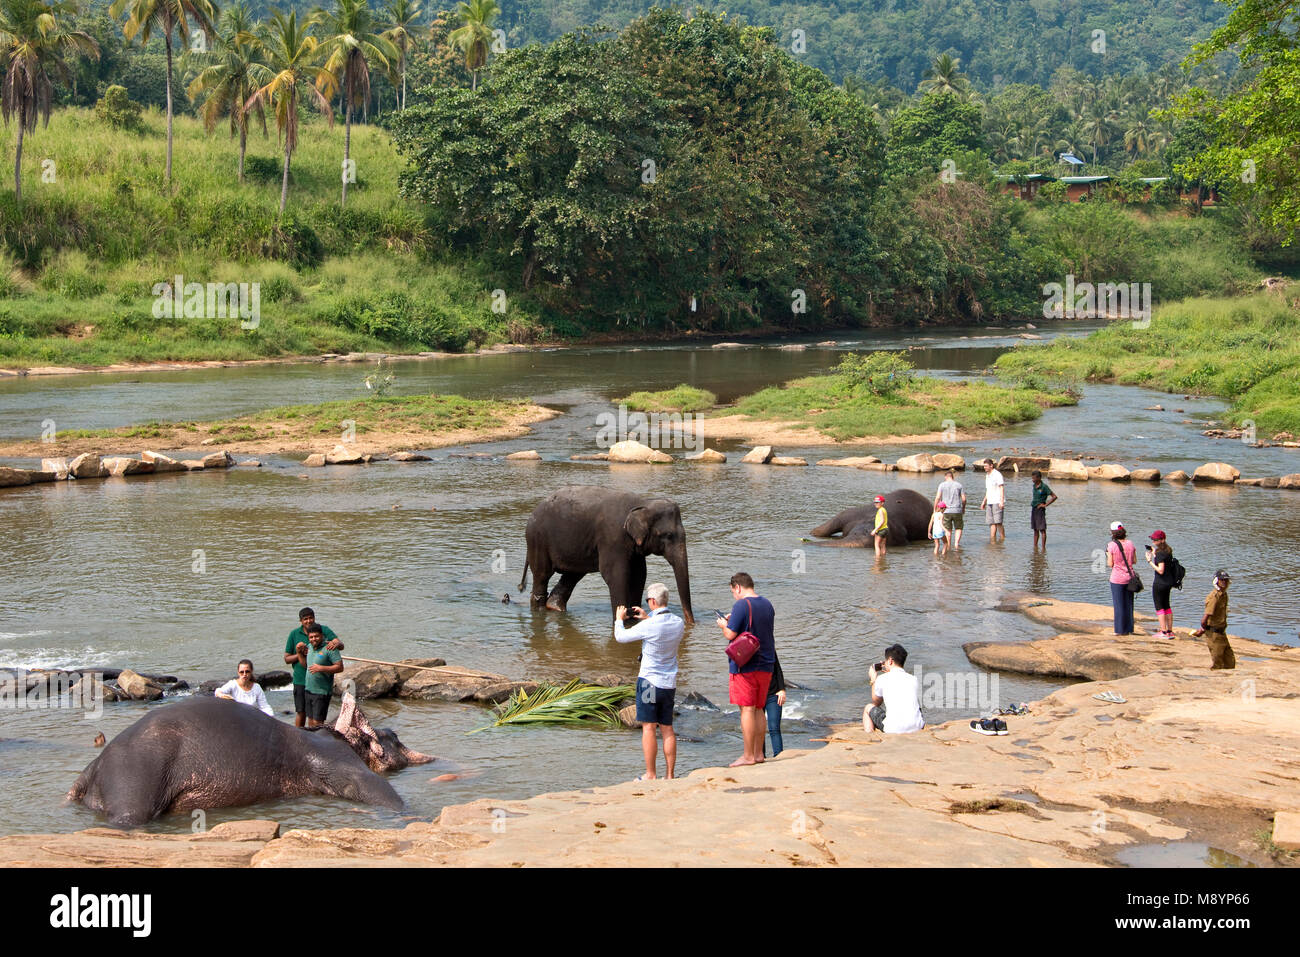 Los elefantes de Sri Lanka desde el Orfanato de Elefantes Pinnawala bañarse en el río con los turistas mirando y fotografiarlos. Foto de stock